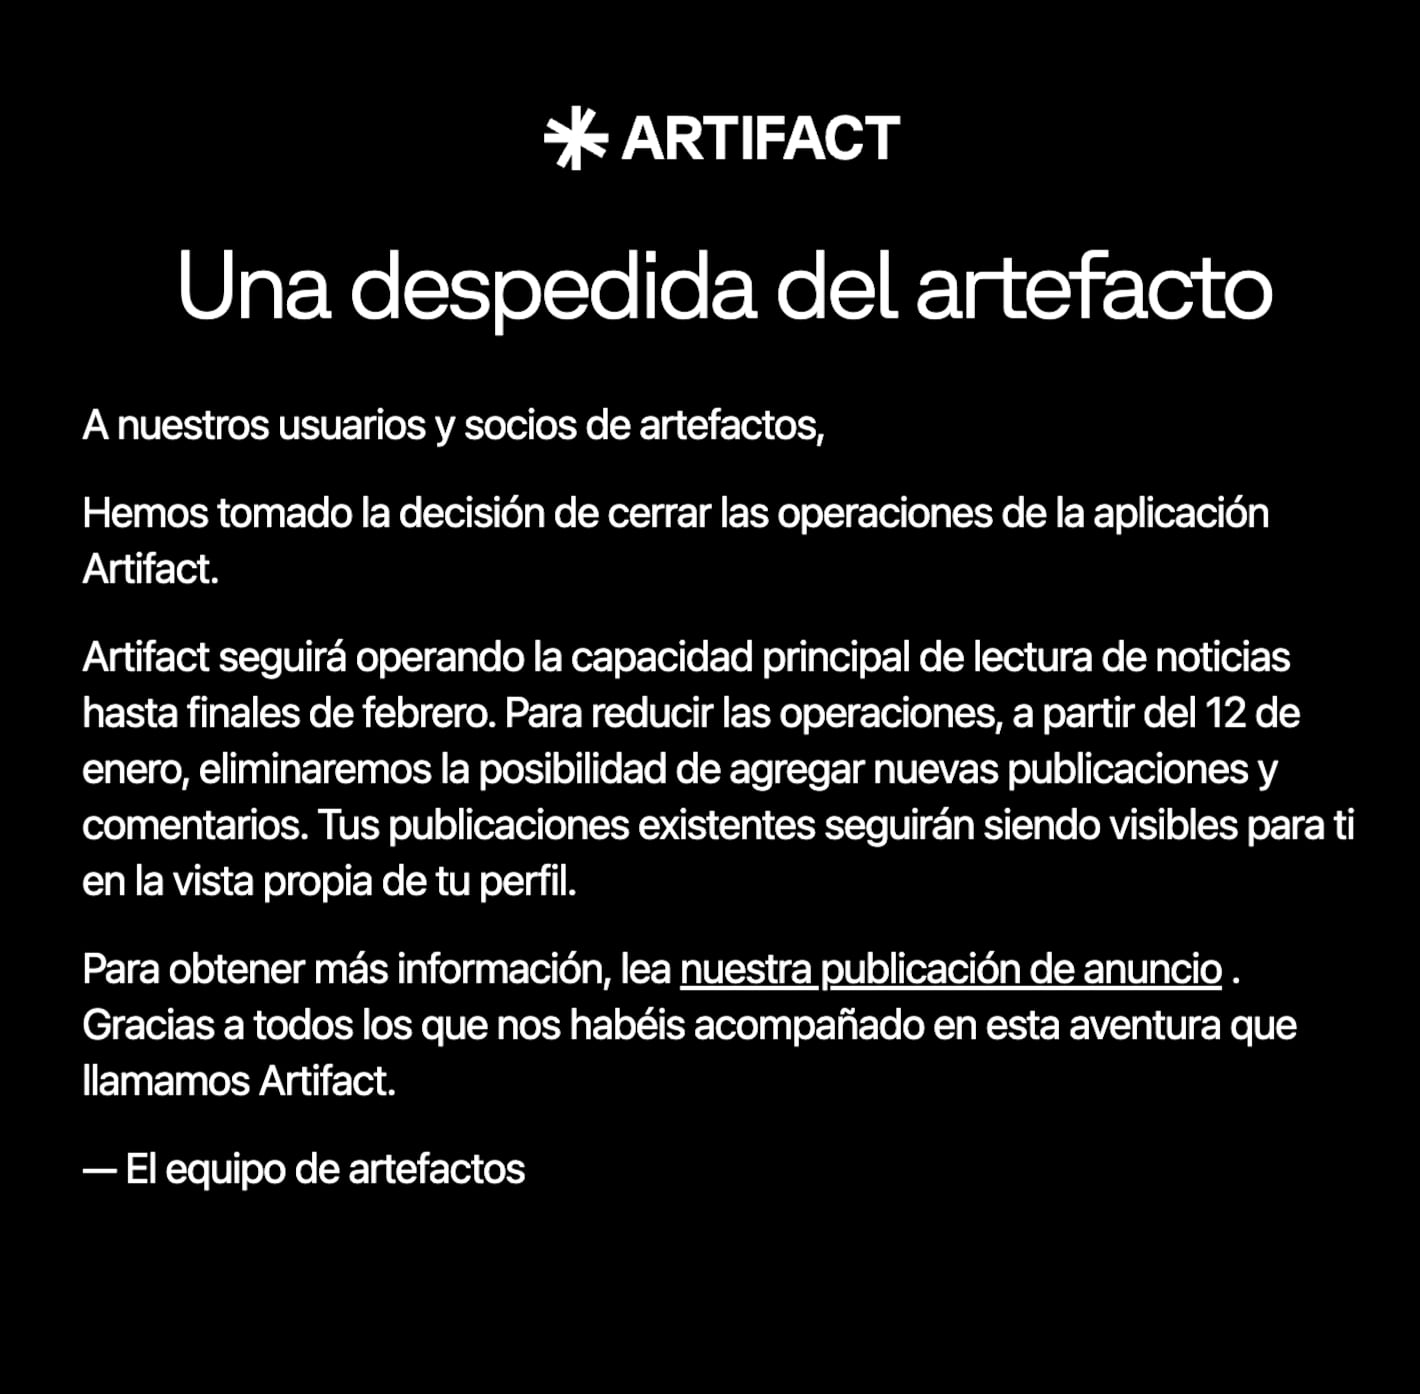 Mensaje de despedida de Artifact en su sitio web oficial (traducido del inglés al español)